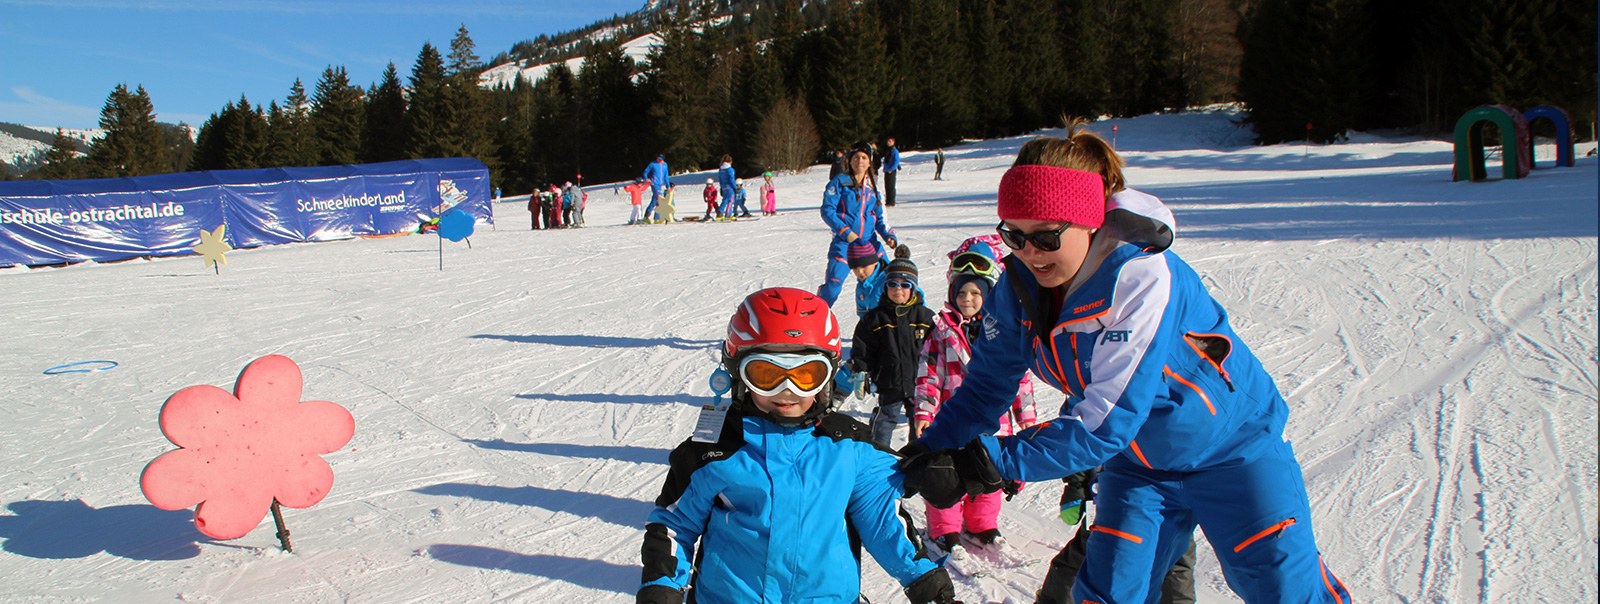 Alpin Skikurse Der Skischule Ostrachtal in Ängstliche Kinder Bilder